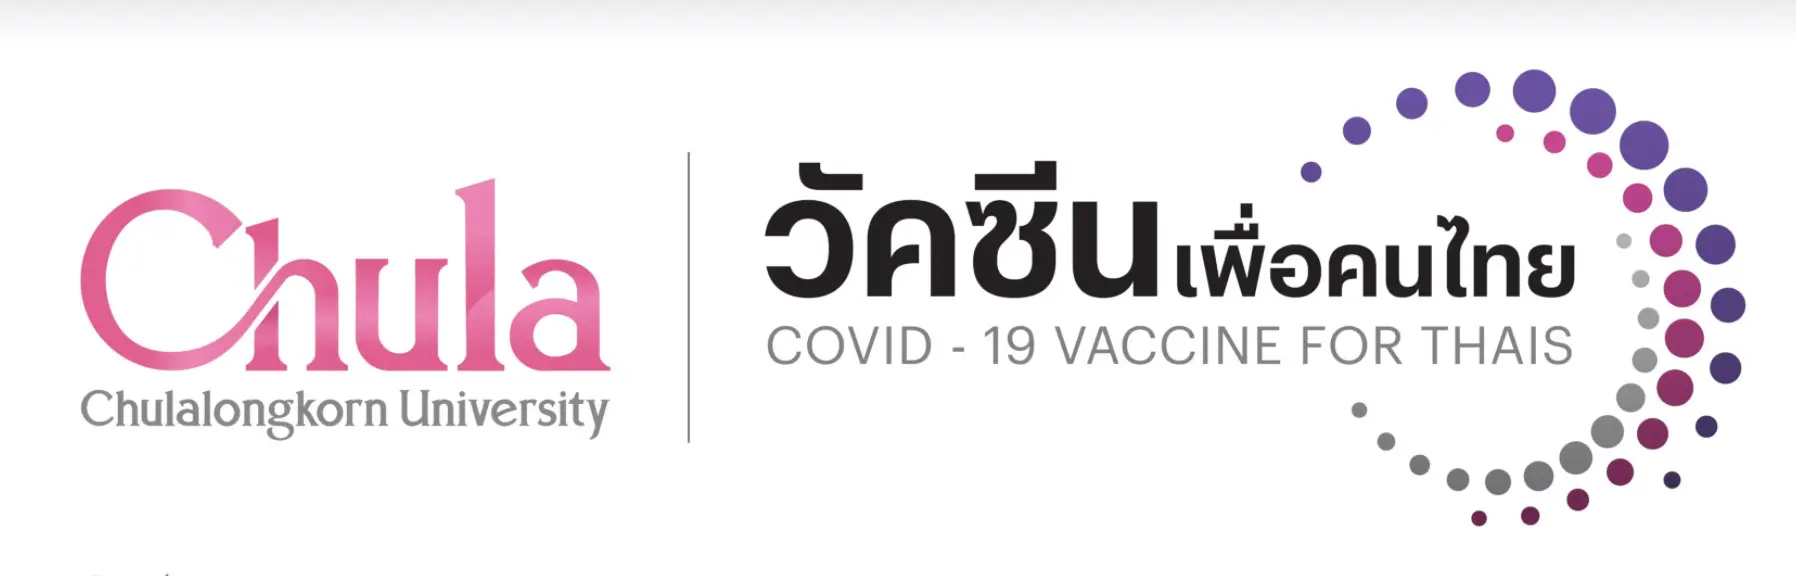 จุฬาฯเปิดโครงการวัคซีนเพื่อคนไทย รับบริจาคทุนวิจัย 500 บ. 1 ล้านคน เริ่ม 18 ธันวาคม 2563 เวลา 09.00 น.